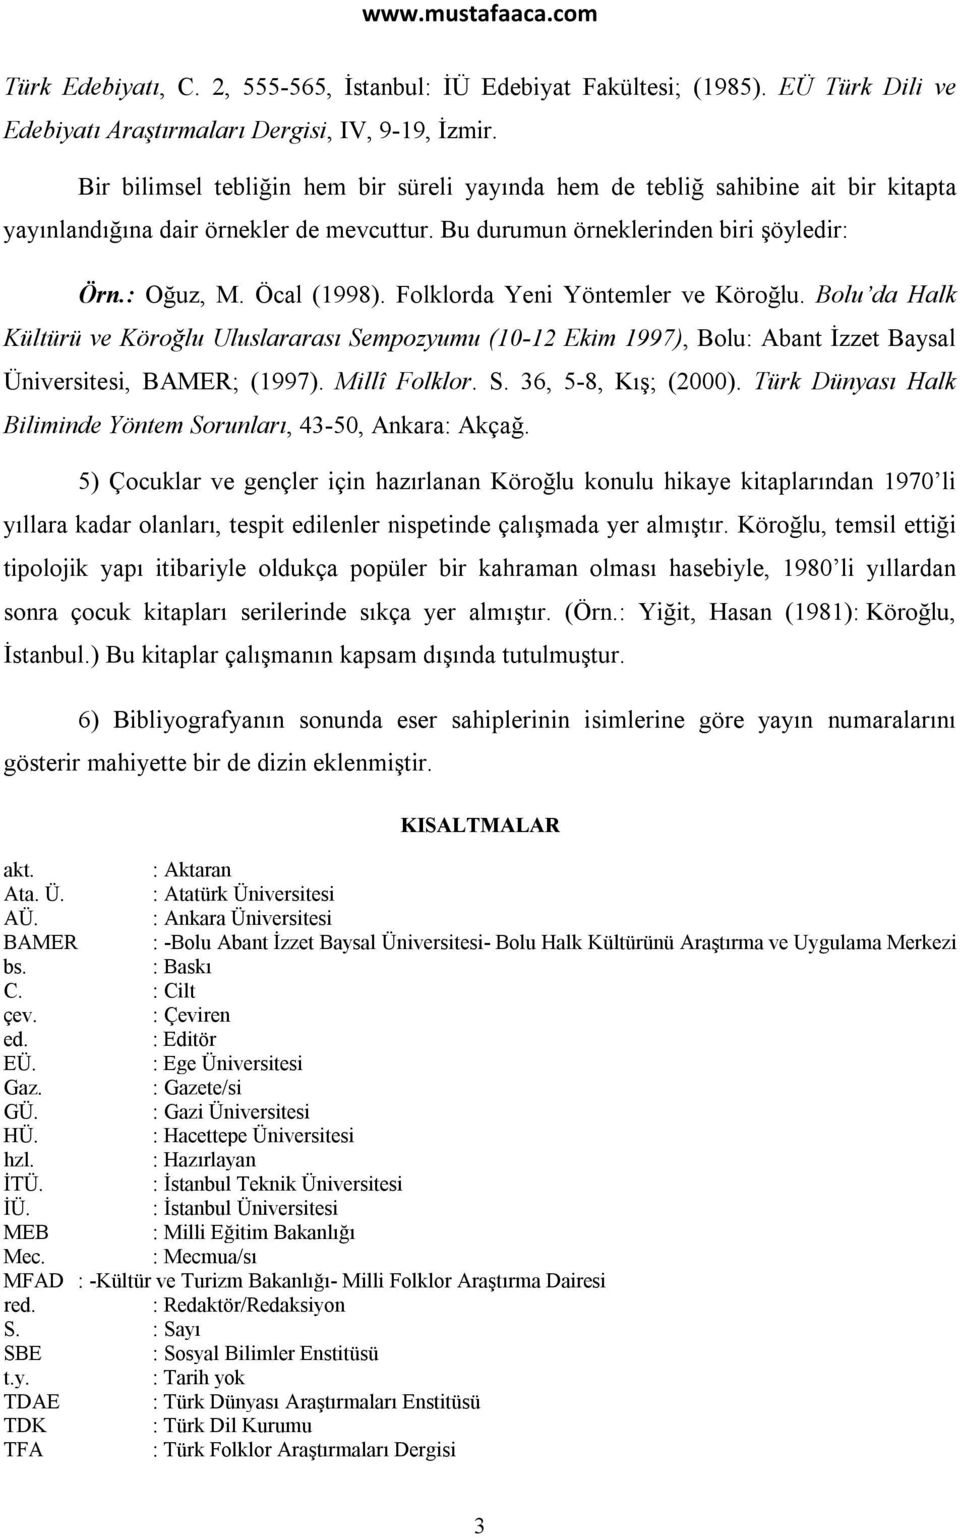 Folklorda Yeni Yöntemler ve Köroğlu. Bolu da Halk Kültürü ve Köroğlu Uluslararası Sempozyumu (10-12 Ekim 1997), Bolu: Abant İzzet Baysal Üniversitesi, BAMER; (1997). Millî Folklor. S. 36, 5-8, Kış; (2000).